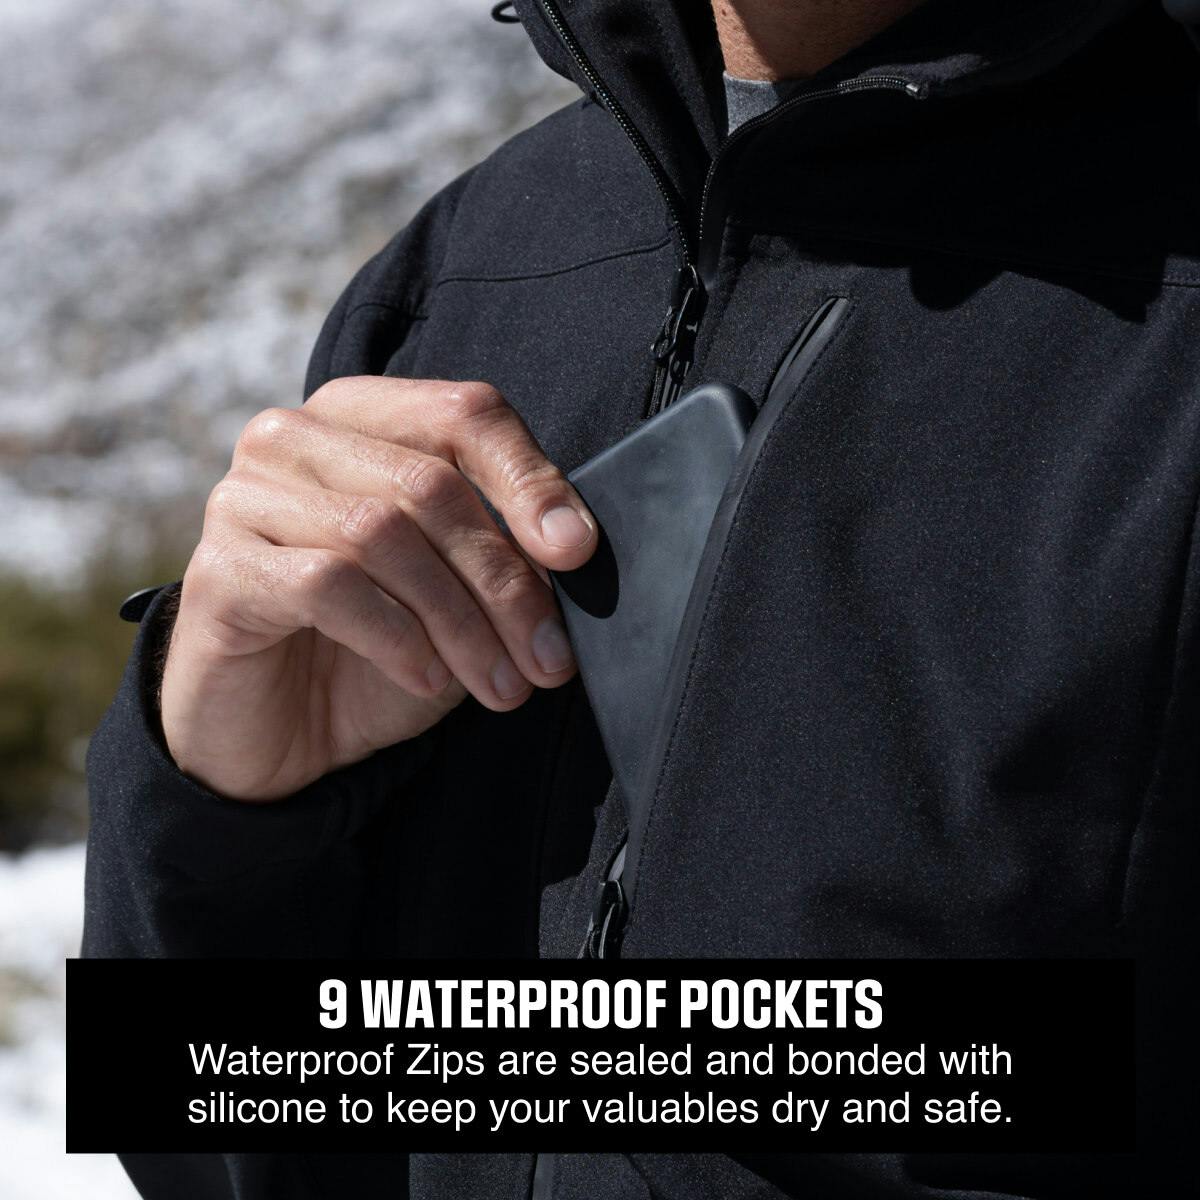 Introducing the Baerskin Waterproof Softshell Jacket